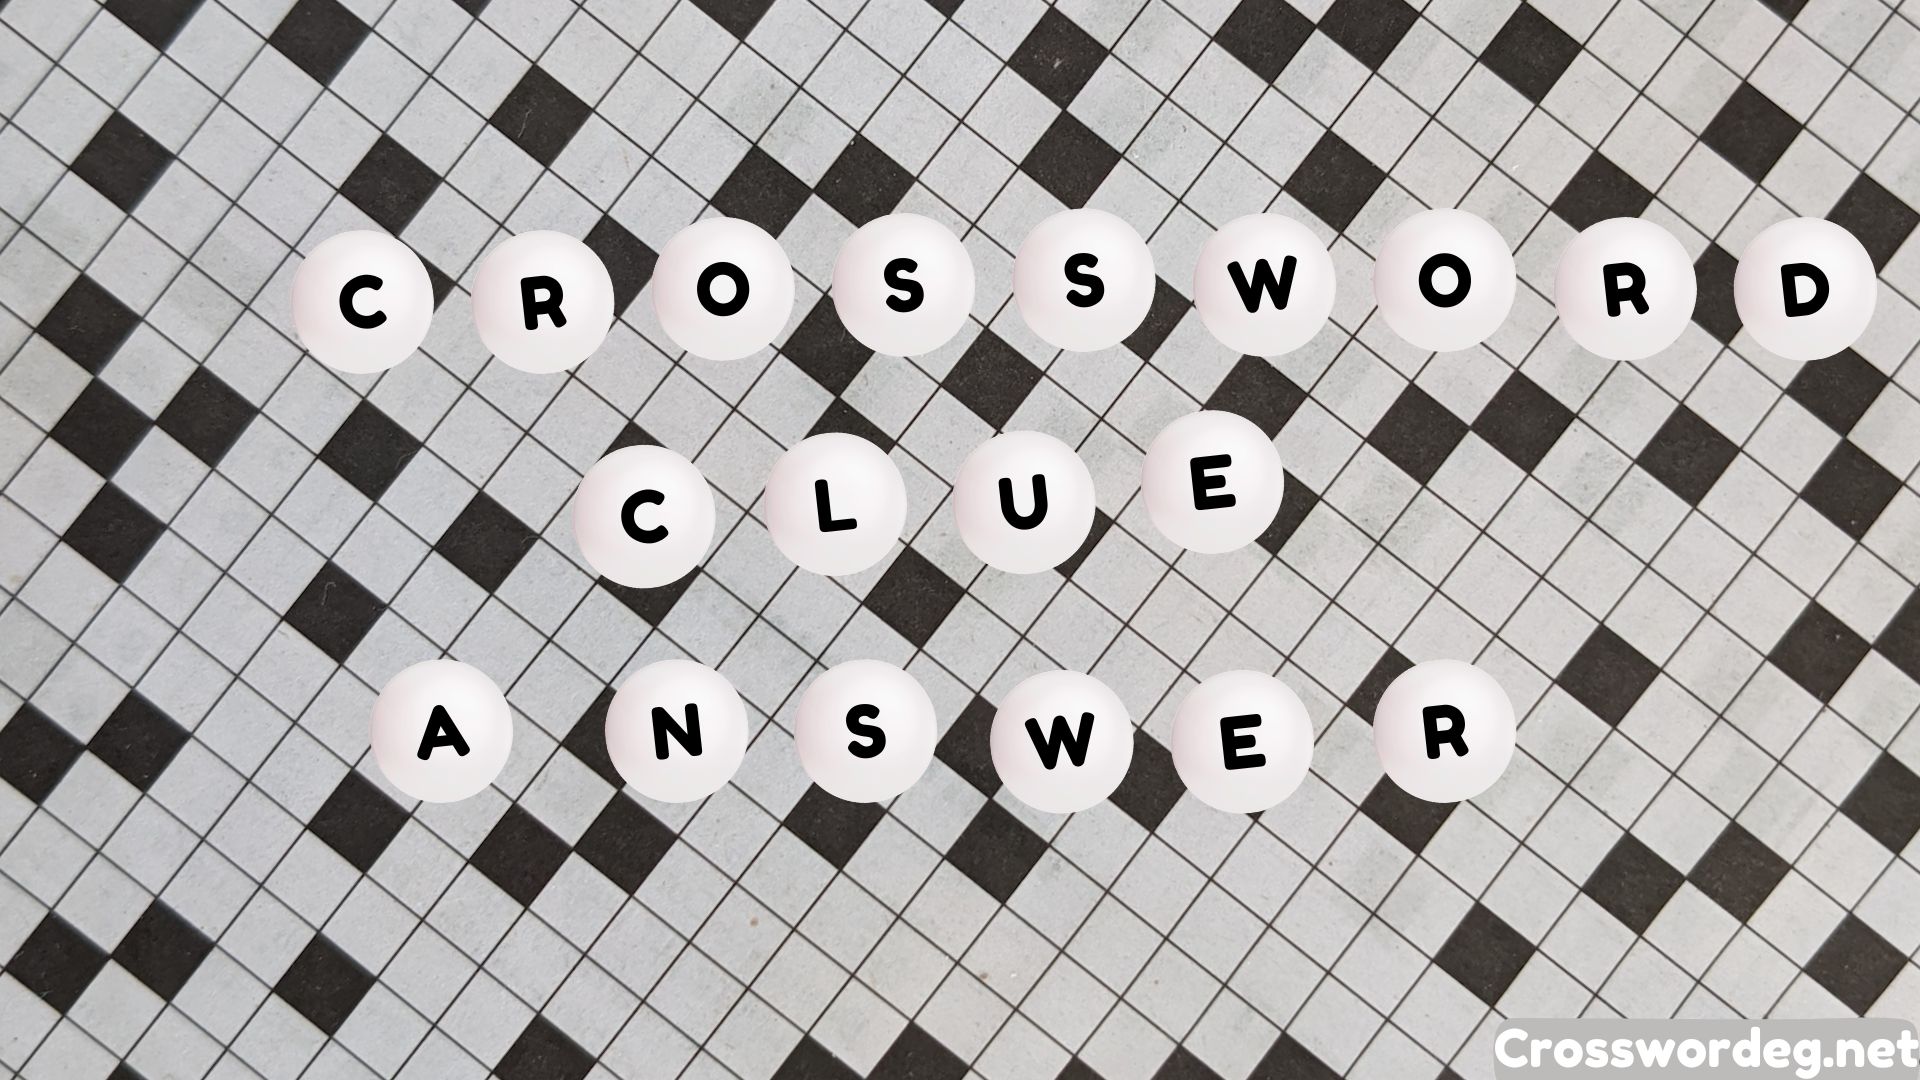 Stage Crossword Clue Answers Crosswordeg net